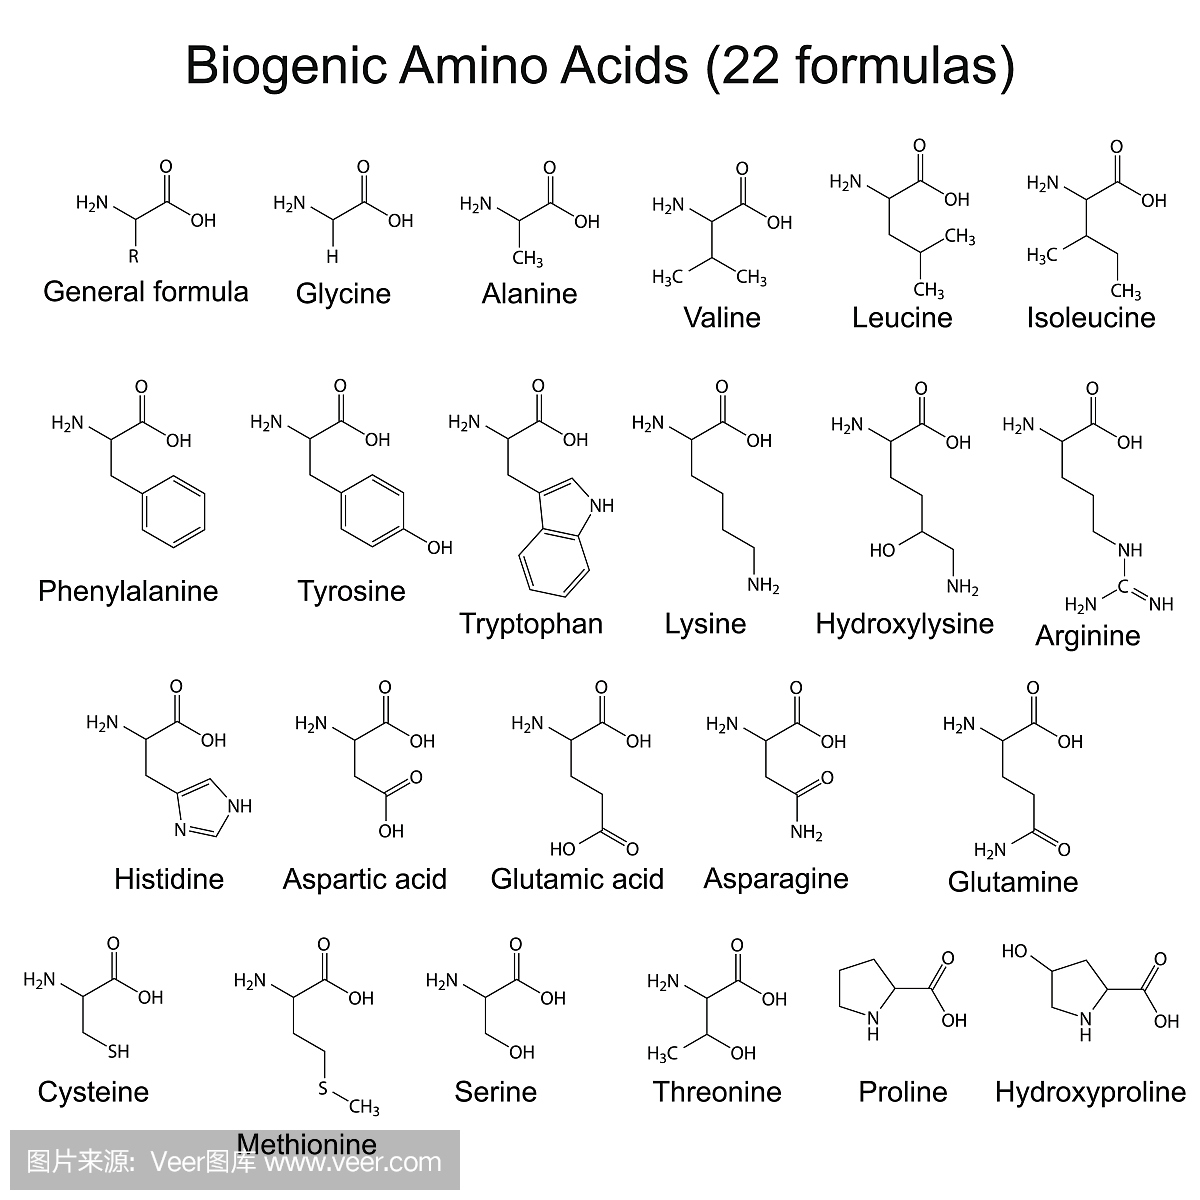 二十二种生物氨基酸 - 化学式